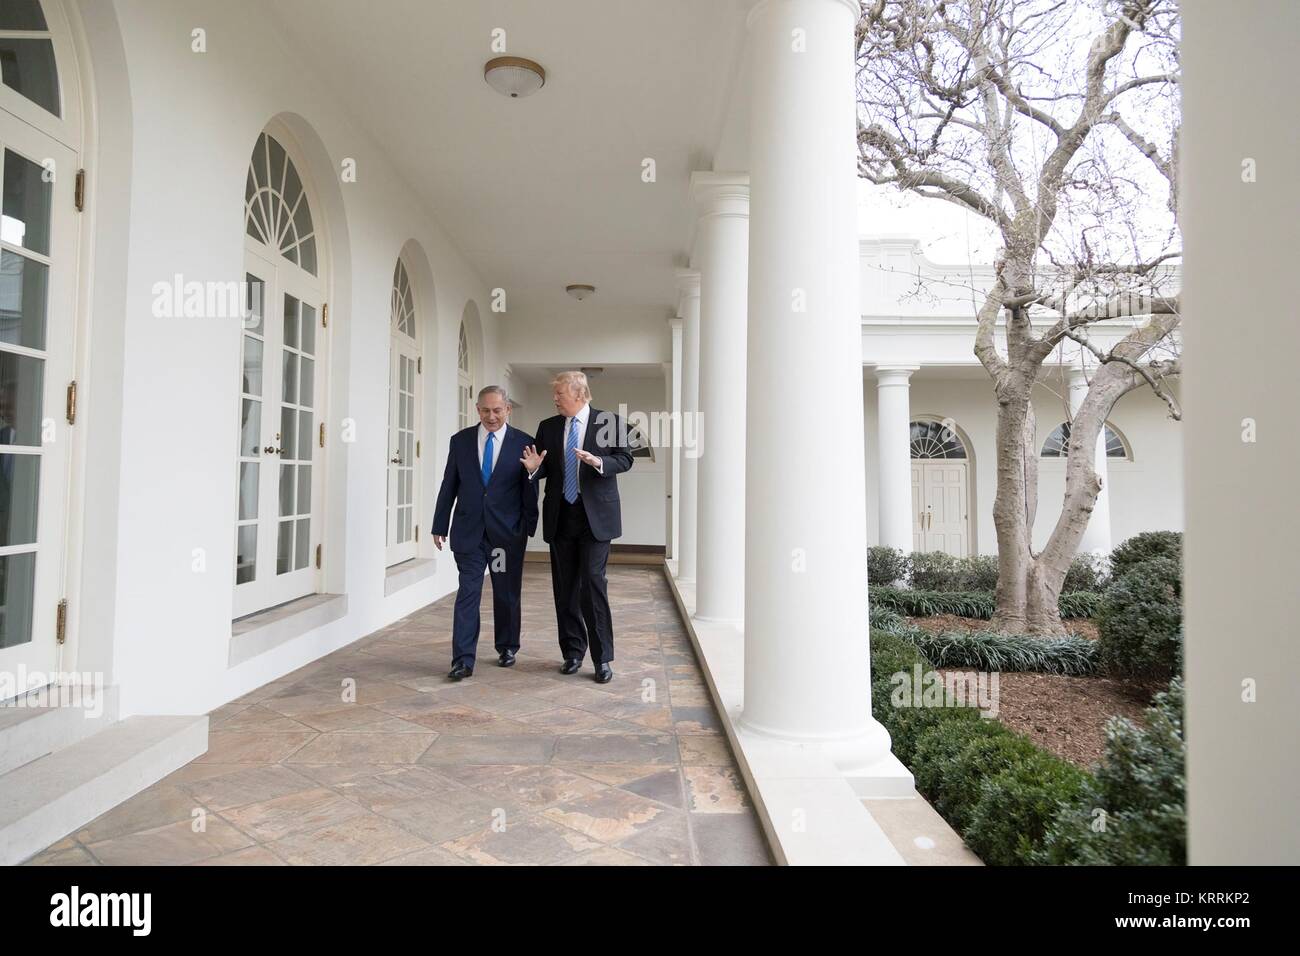 Le Premier ministre israélien Benjamin Netanyahu (à gauche) et le président américain Donald Trump à pied le long de la Colonnade de la Maison Blanche le 15 février 2017 à Washington, DC. Banque D'Images